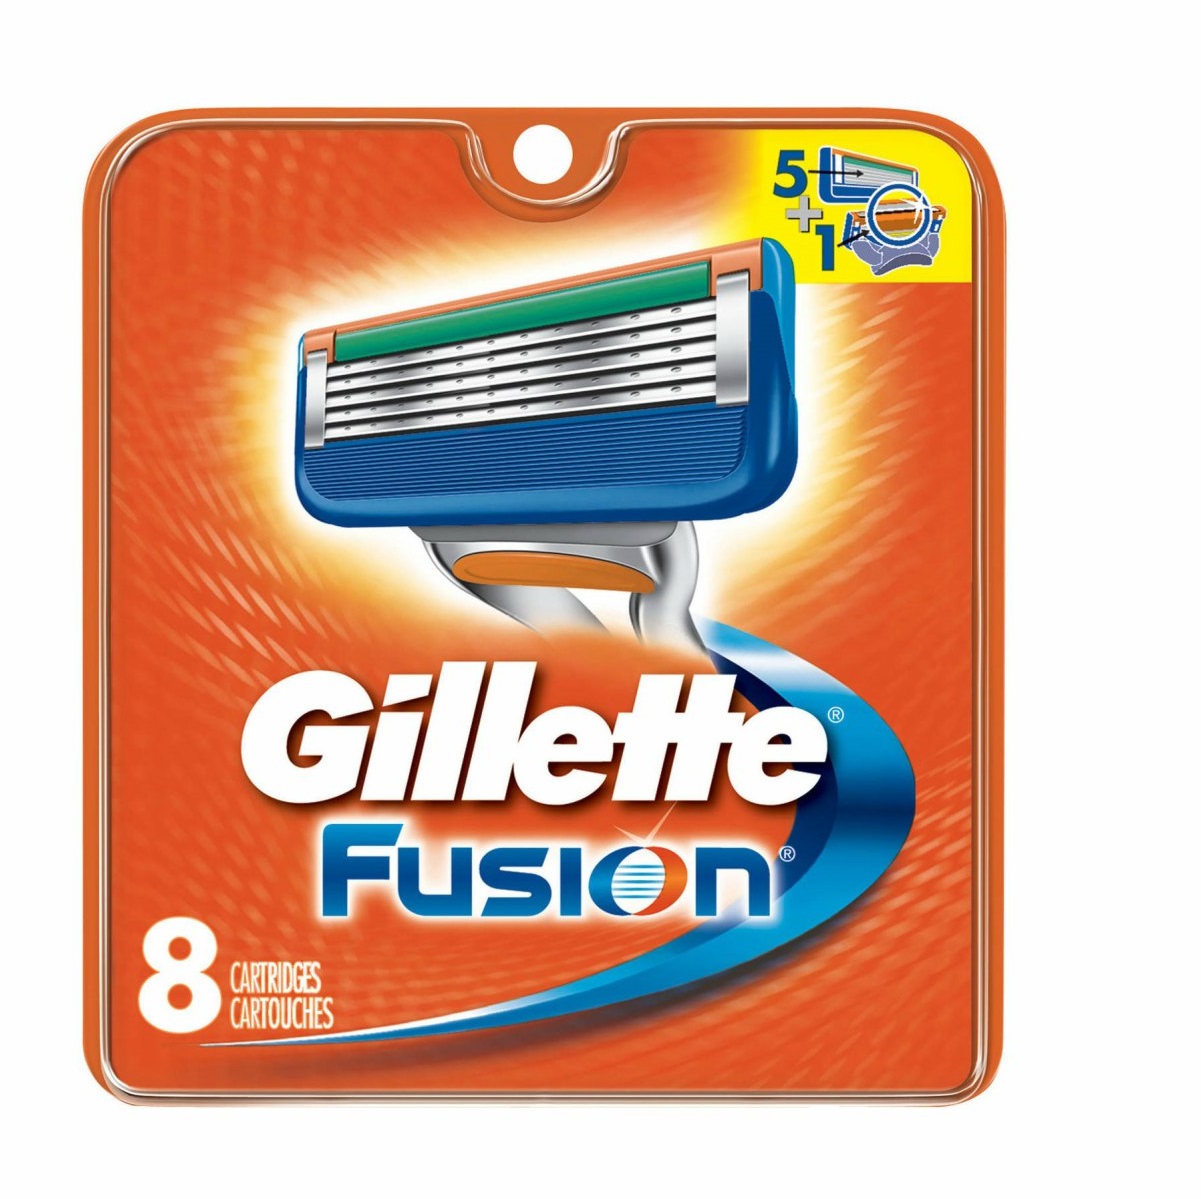 Сменные кассеты для станка Gillette Fusion 8шт цена и фото